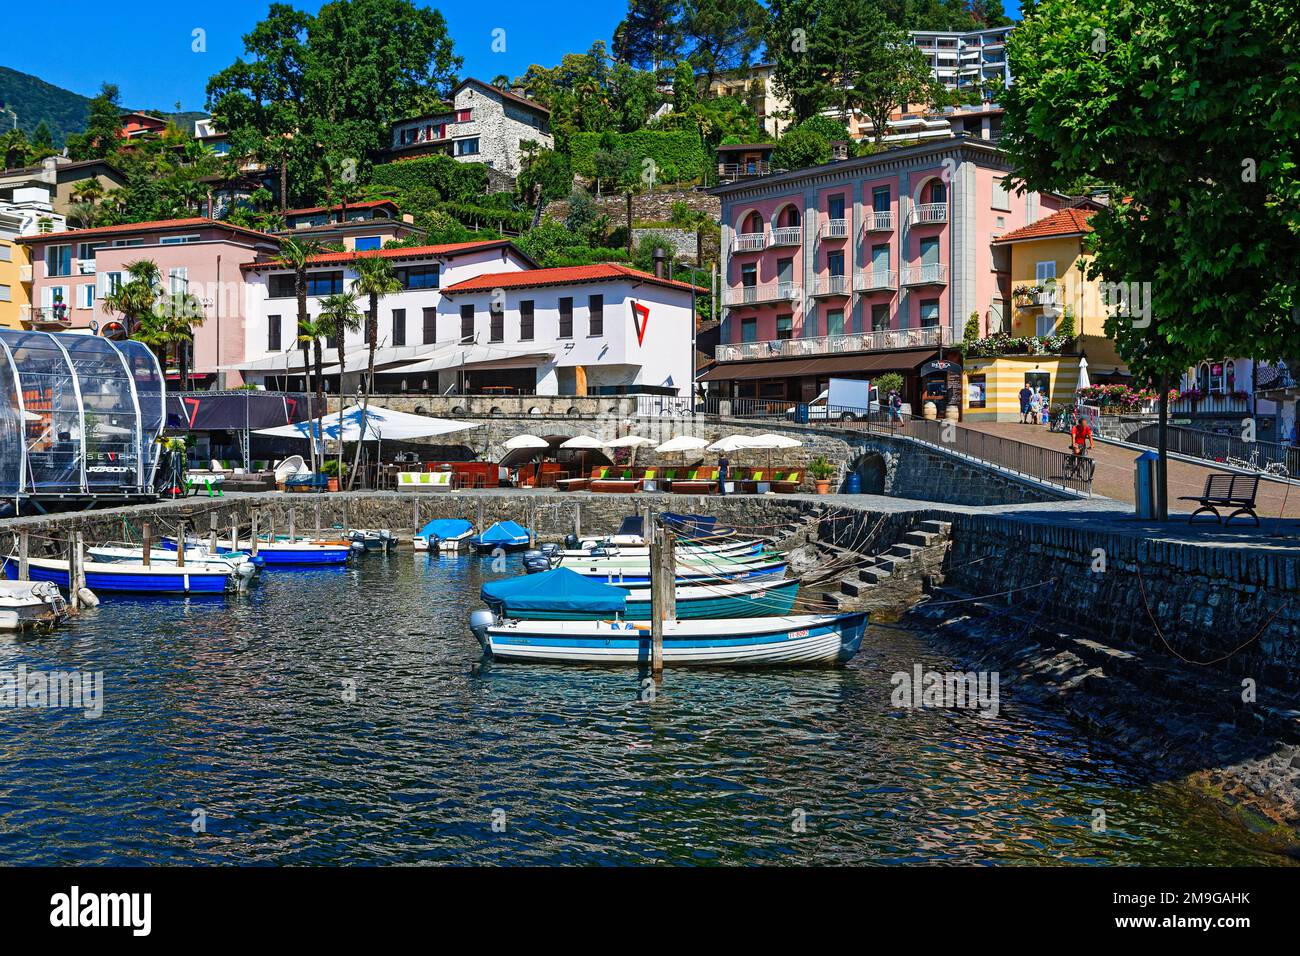 Lungomare del centro storico di Ascona con barche ormeggiate sulla riva del Lago maggiore, Canton Ticino, Svizzera Foto Stock